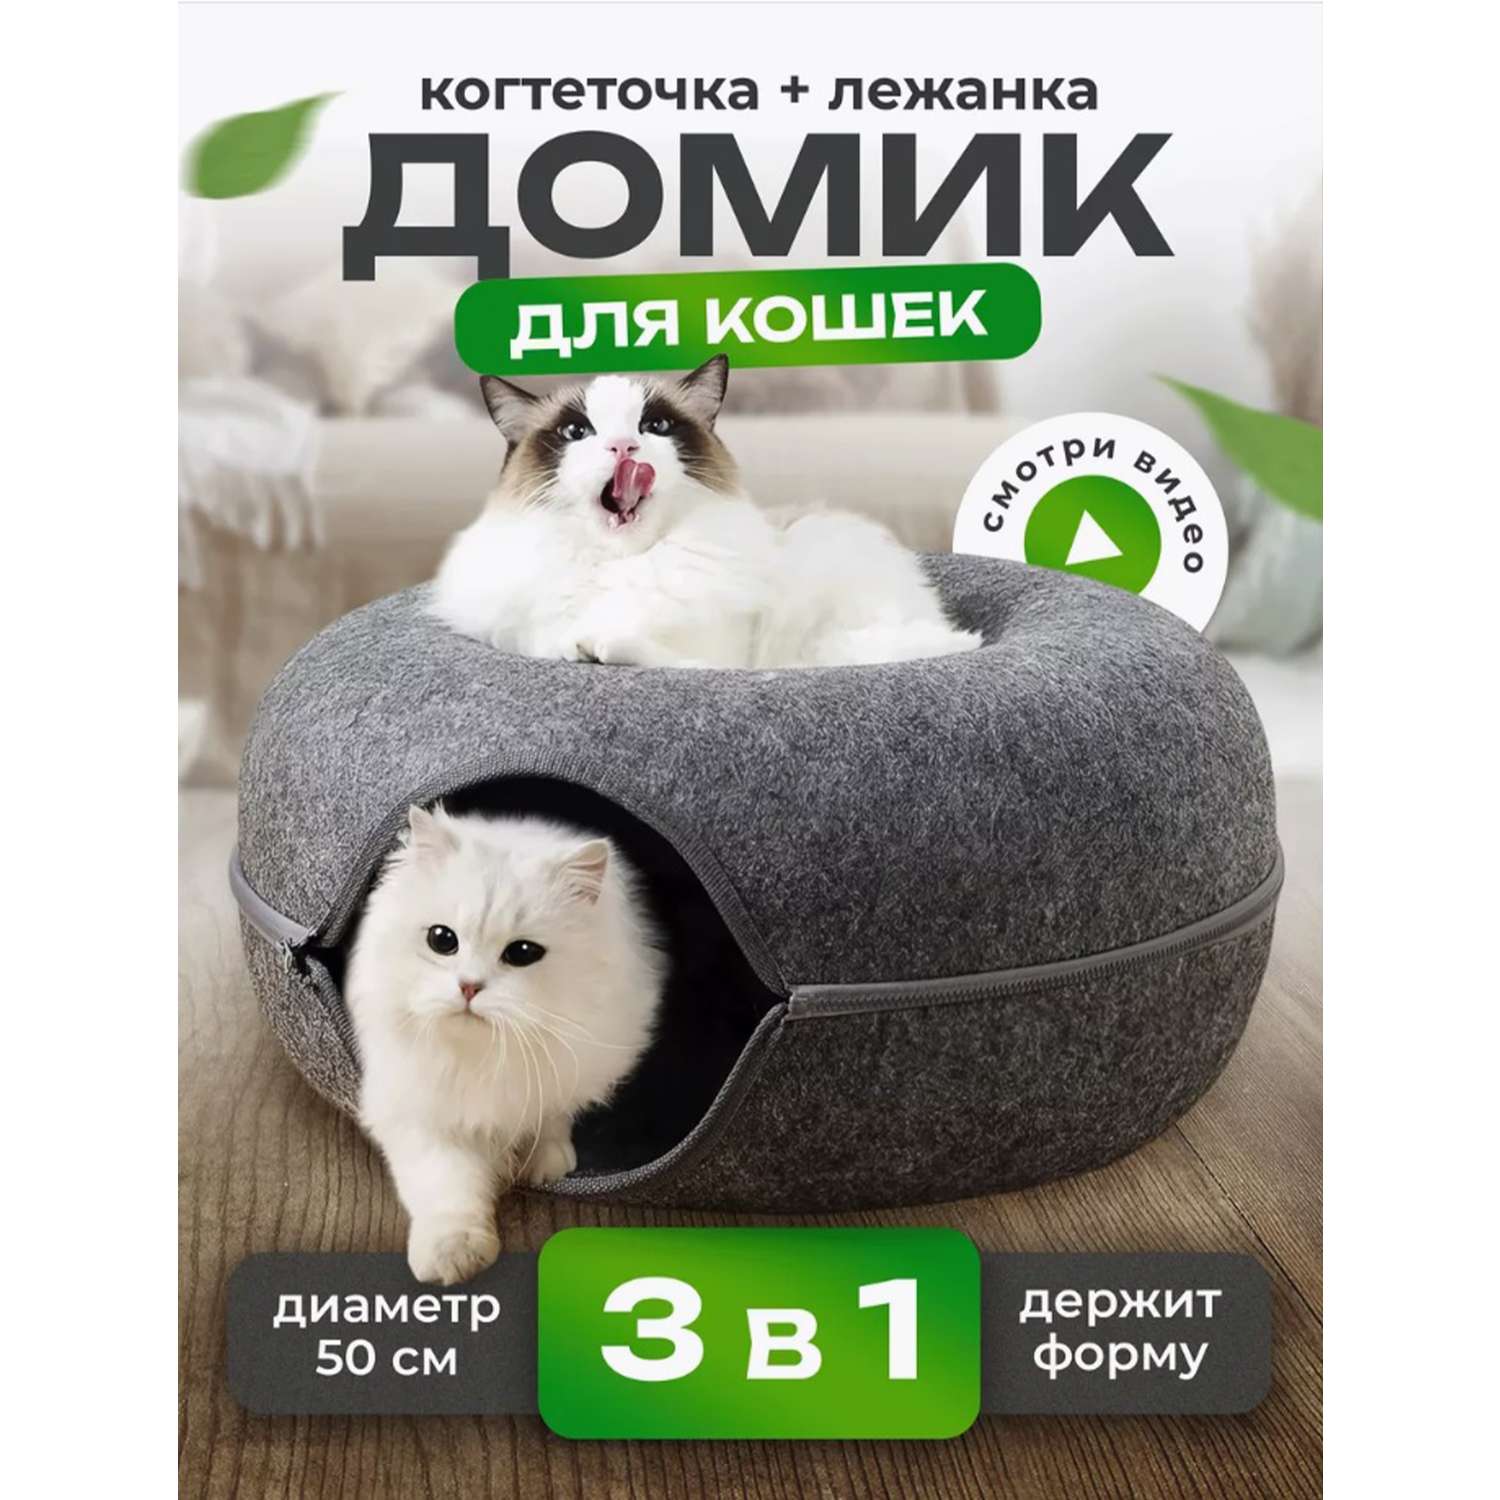 Купить игрушки и когтеточки для кошек в интернет магазине taimyr-expo.ru